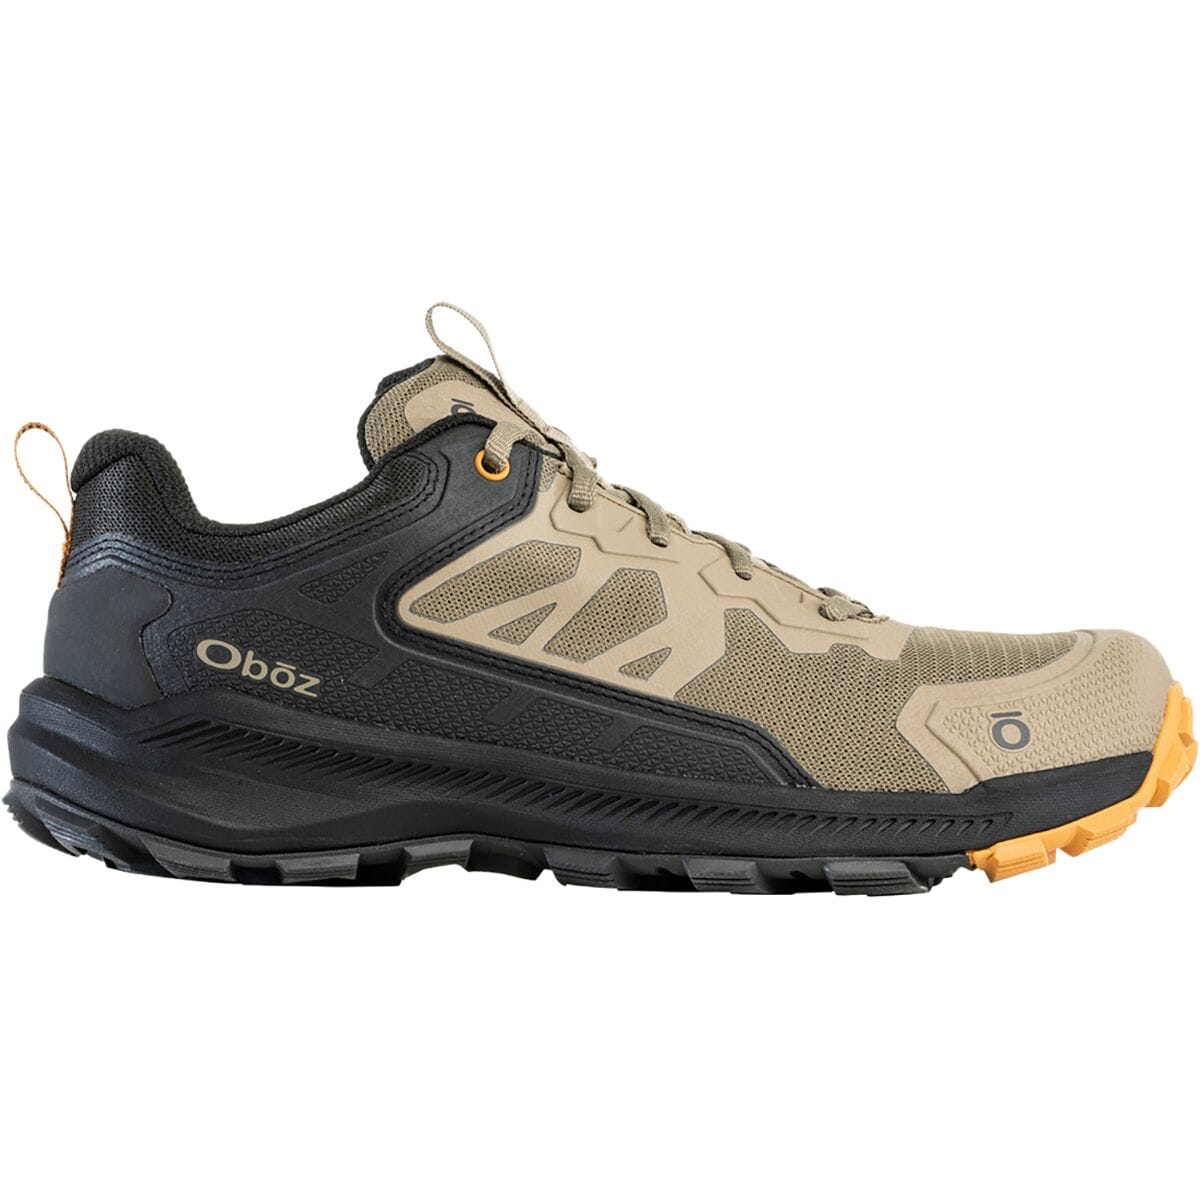 Oboz Katabatic Low Hiking Shoe - Men's